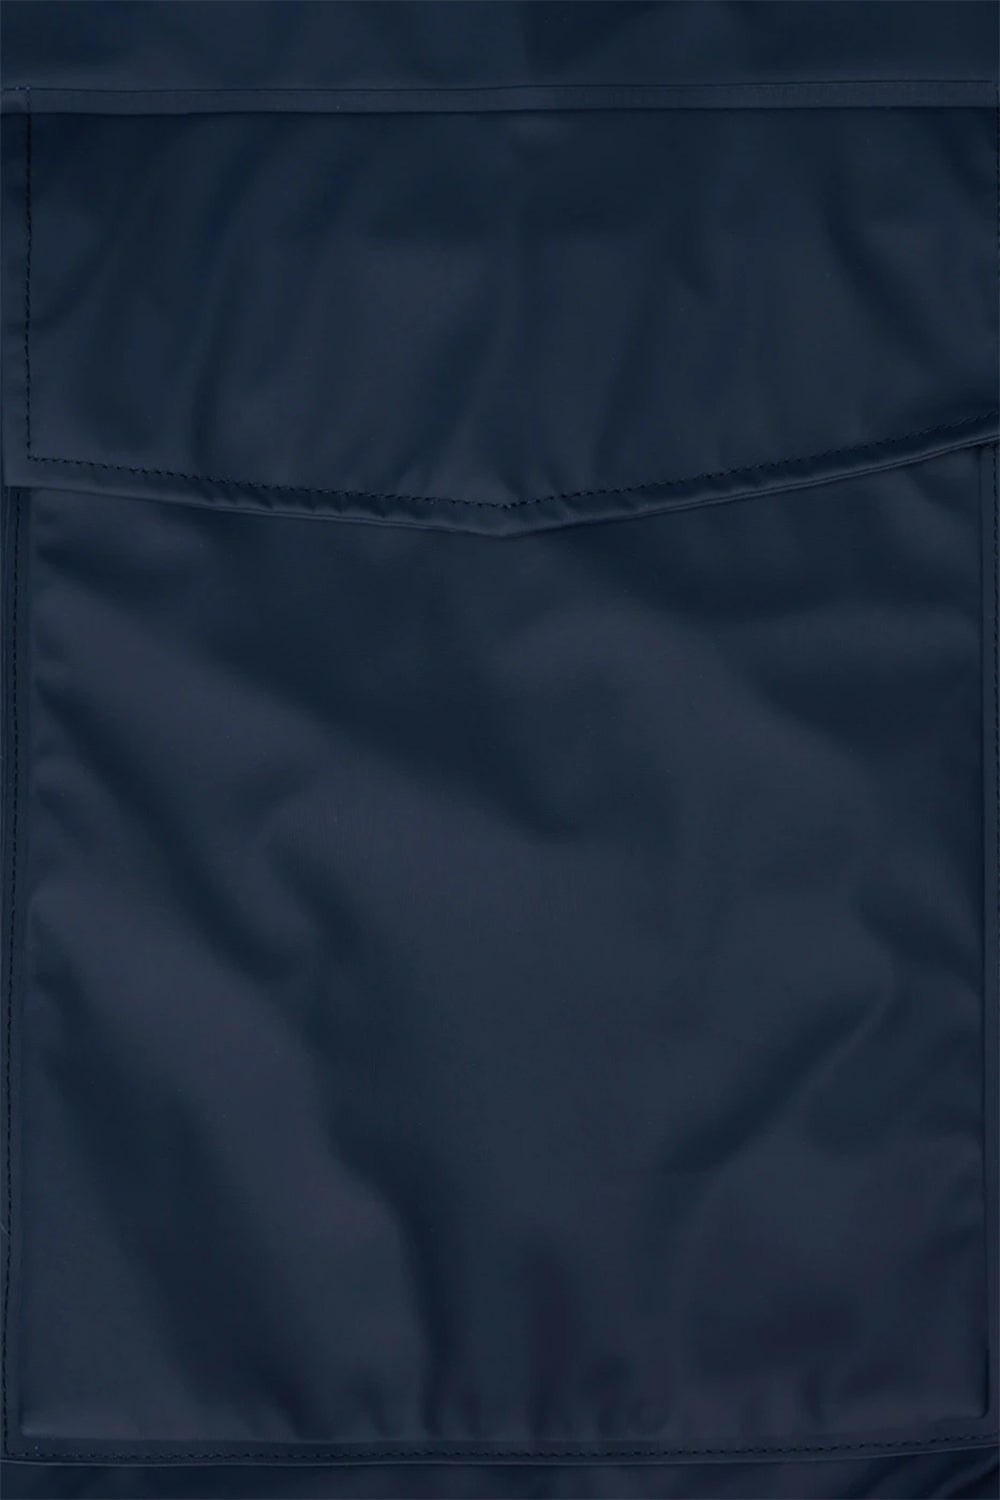 Rains Waterproof Short Hooded Coat (Blue)